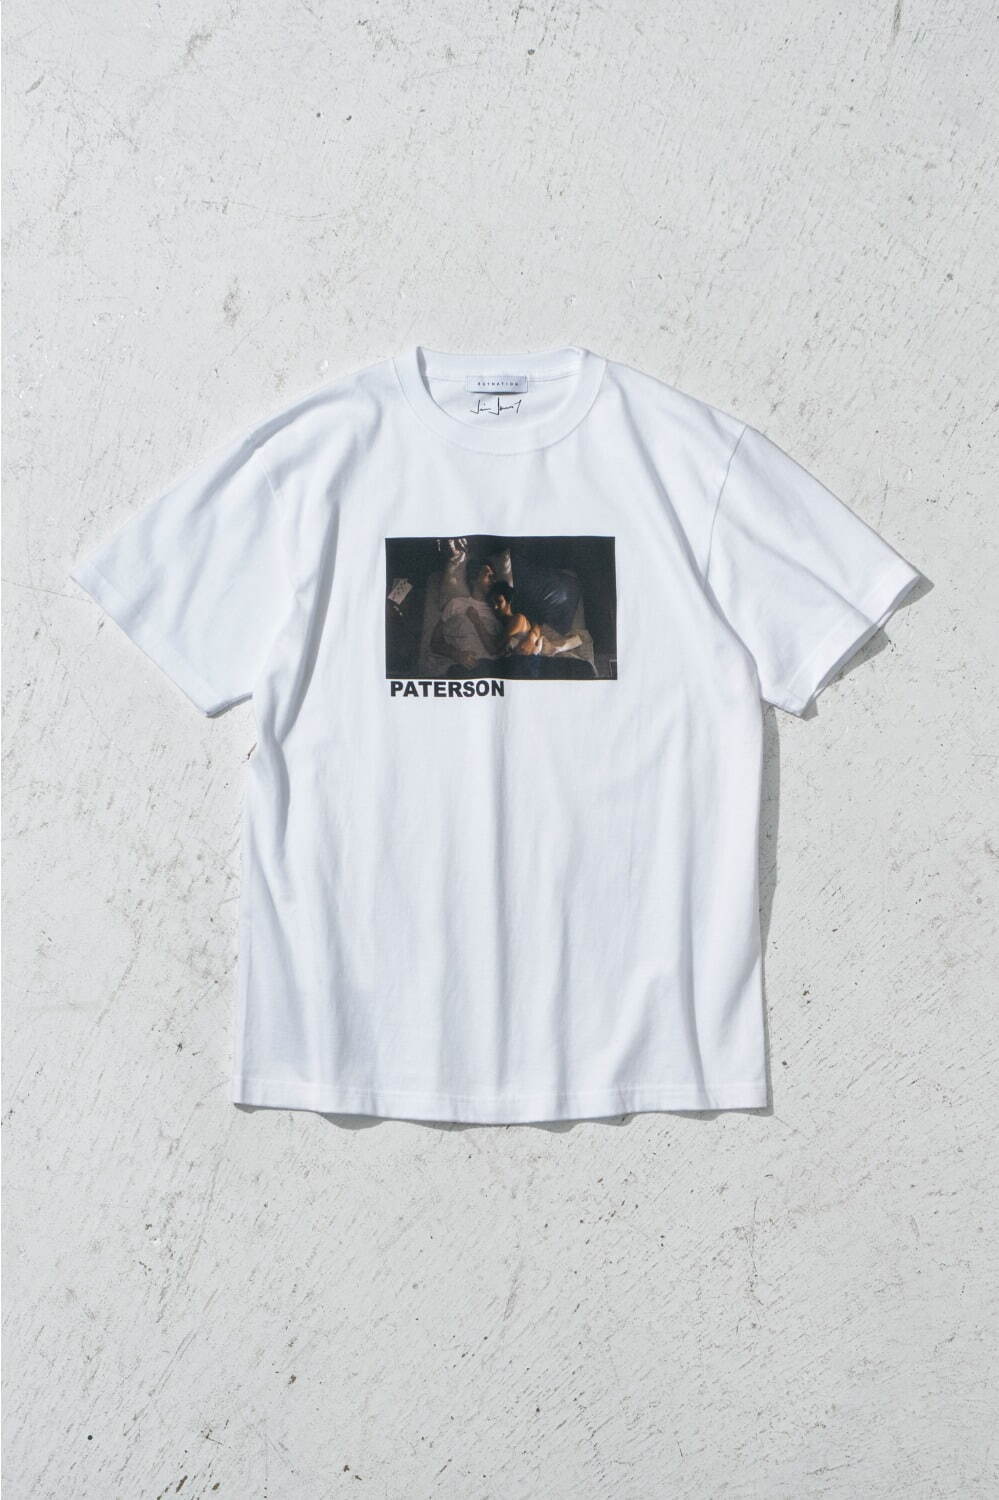 『パターソン』Tシャツ 9,900円